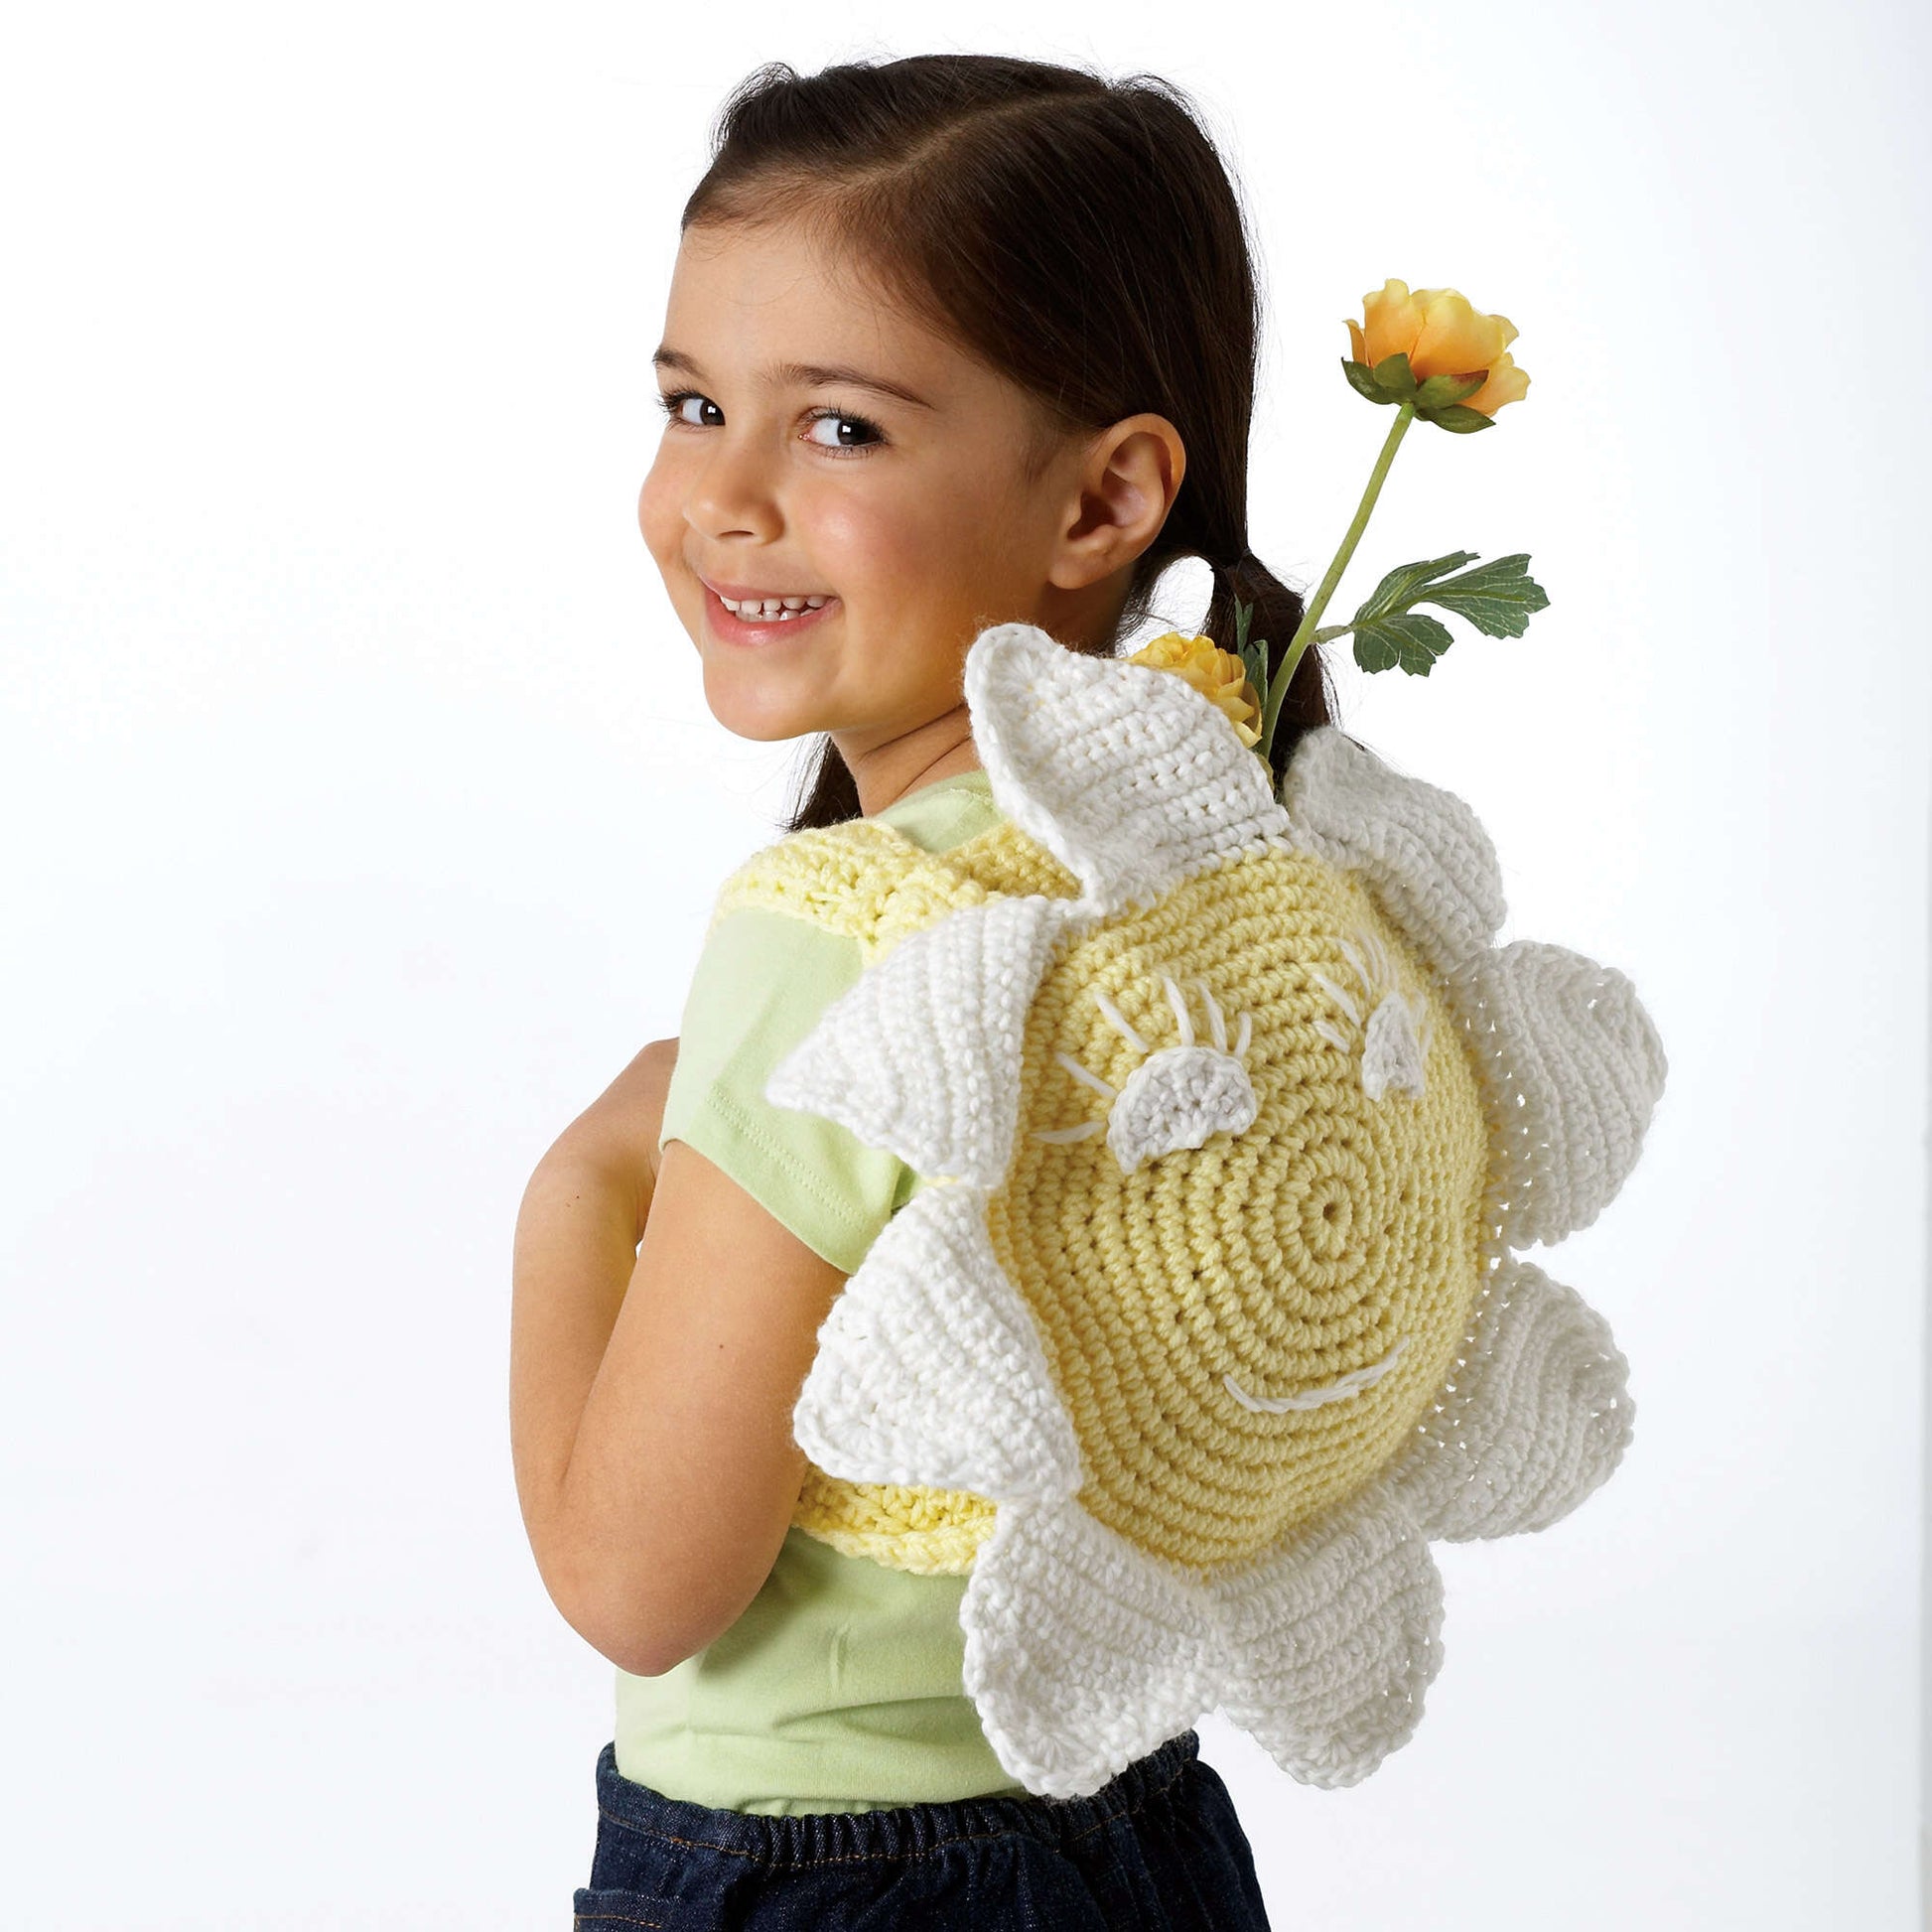 Bernat Sunflower Bag Crochet Bag made in Bernat Super Value yarn